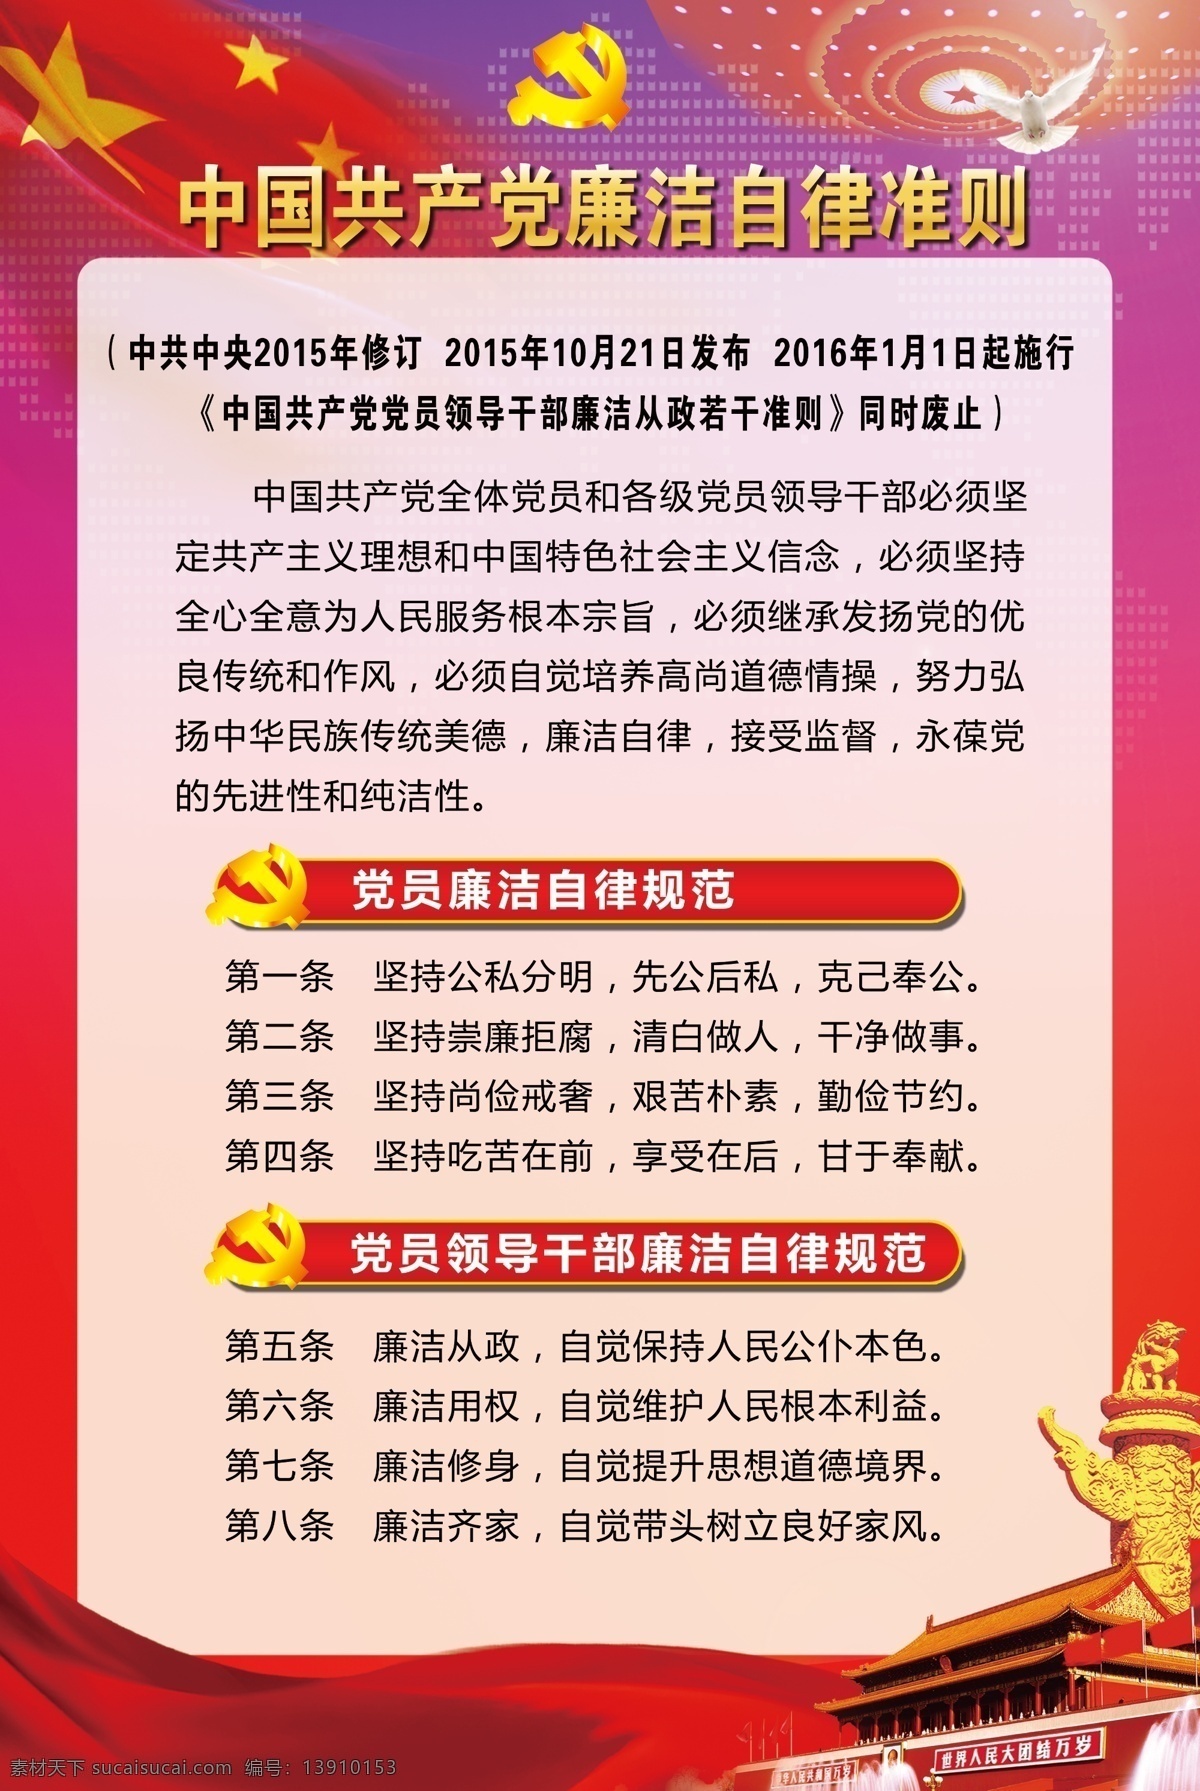 中国共产党 廉洁自律 准则 四个必须 八个规范 正风肃纪 红色